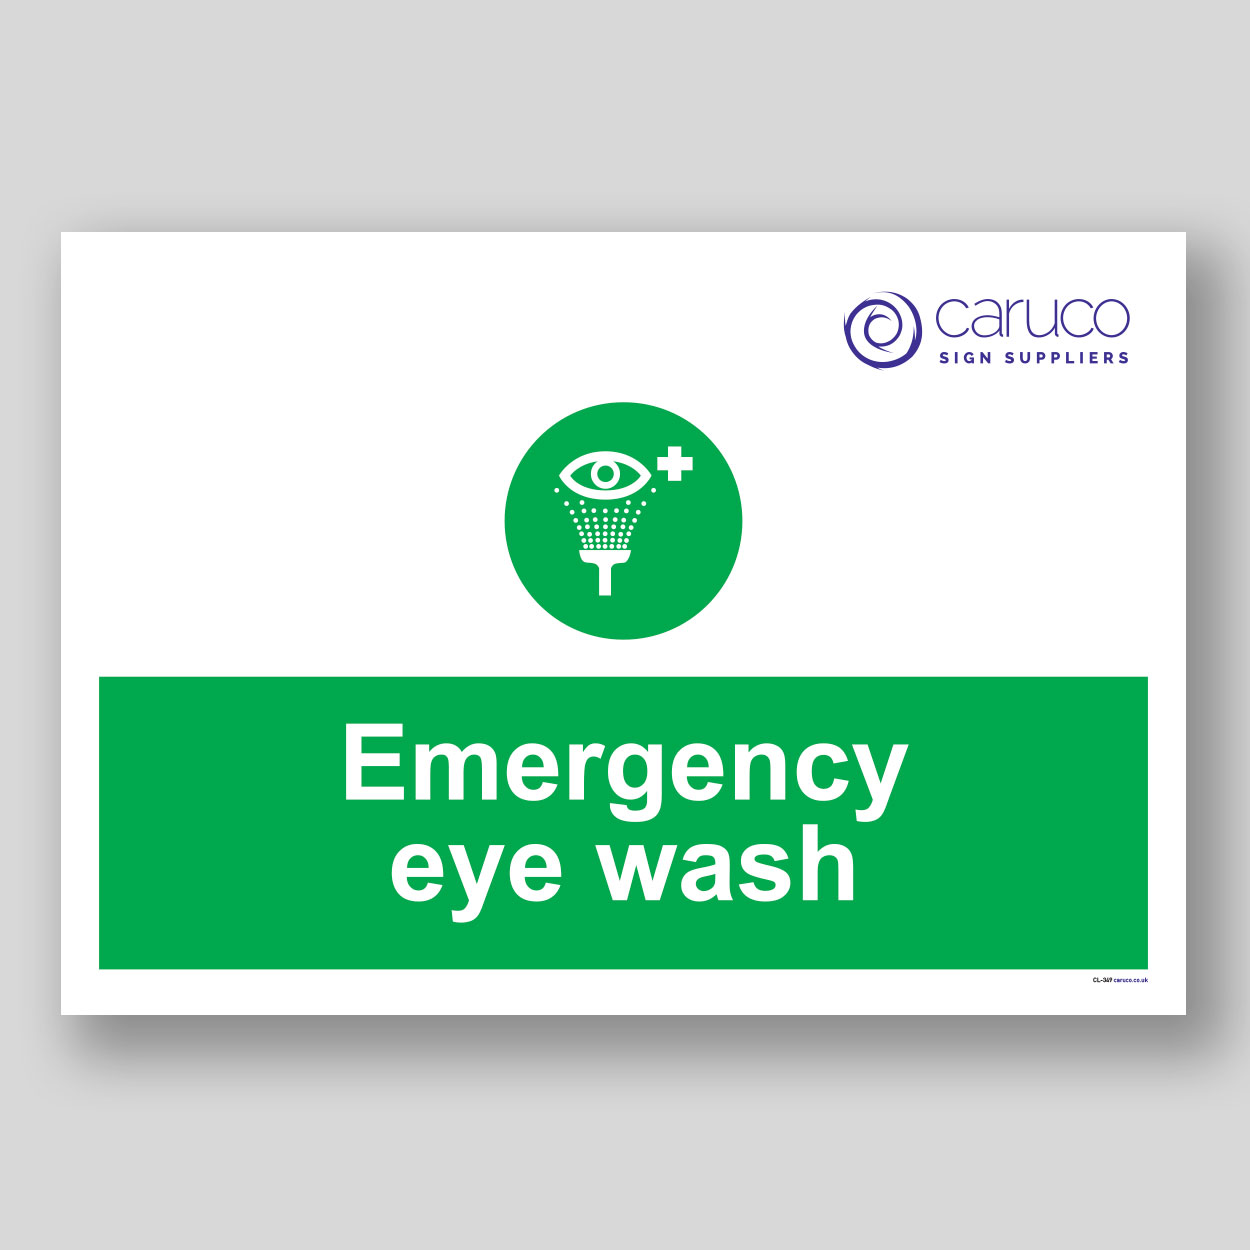 CL-349 Emergency eye wash